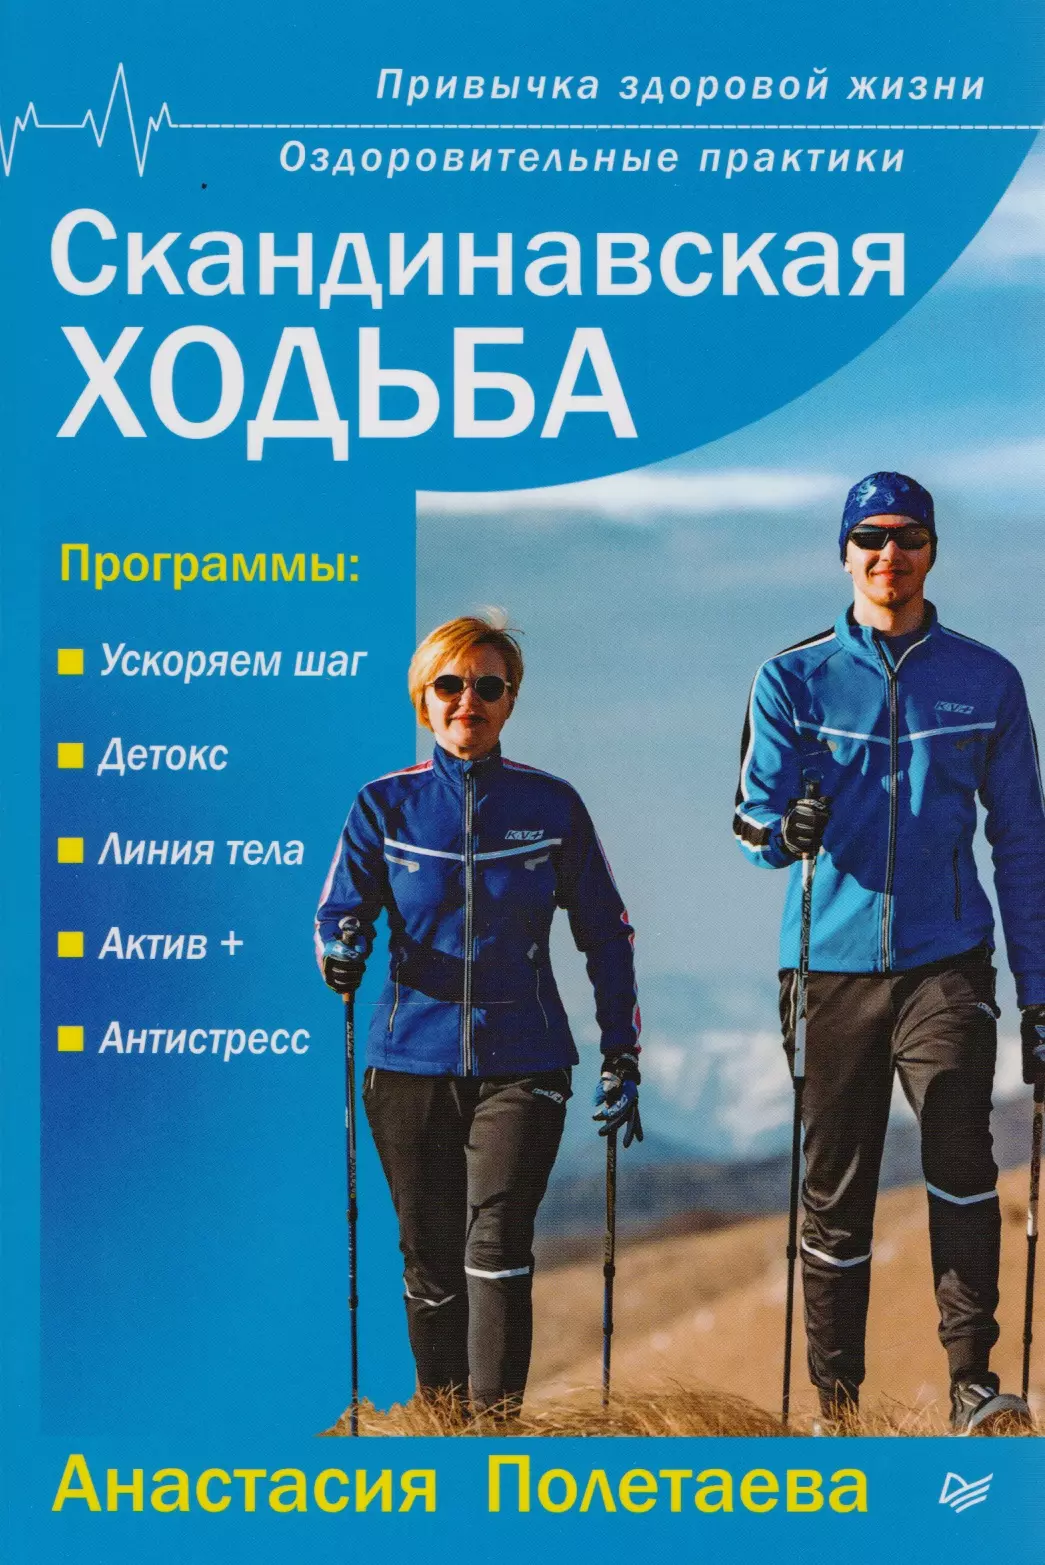 Полетаева Анастасия - Скандинавская ходьба. Привычка здоровой жизни